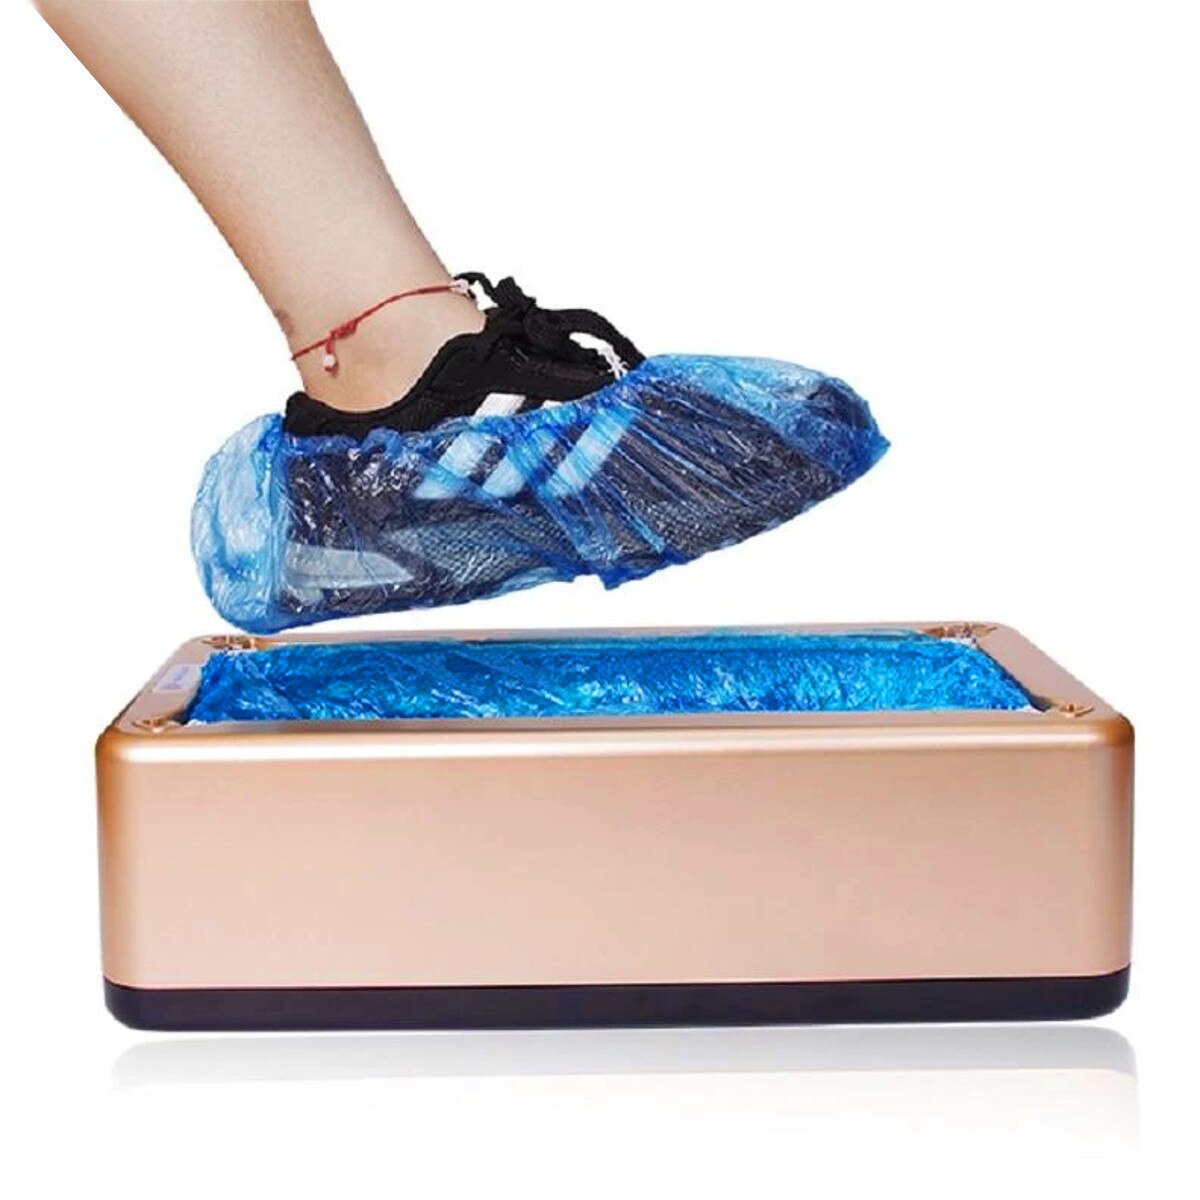 100 stk / sæt plast vandtæt engangs skoovertræk regnvejrsdag gulvbeskytter rengøringsskoovertræk blå skoomslag